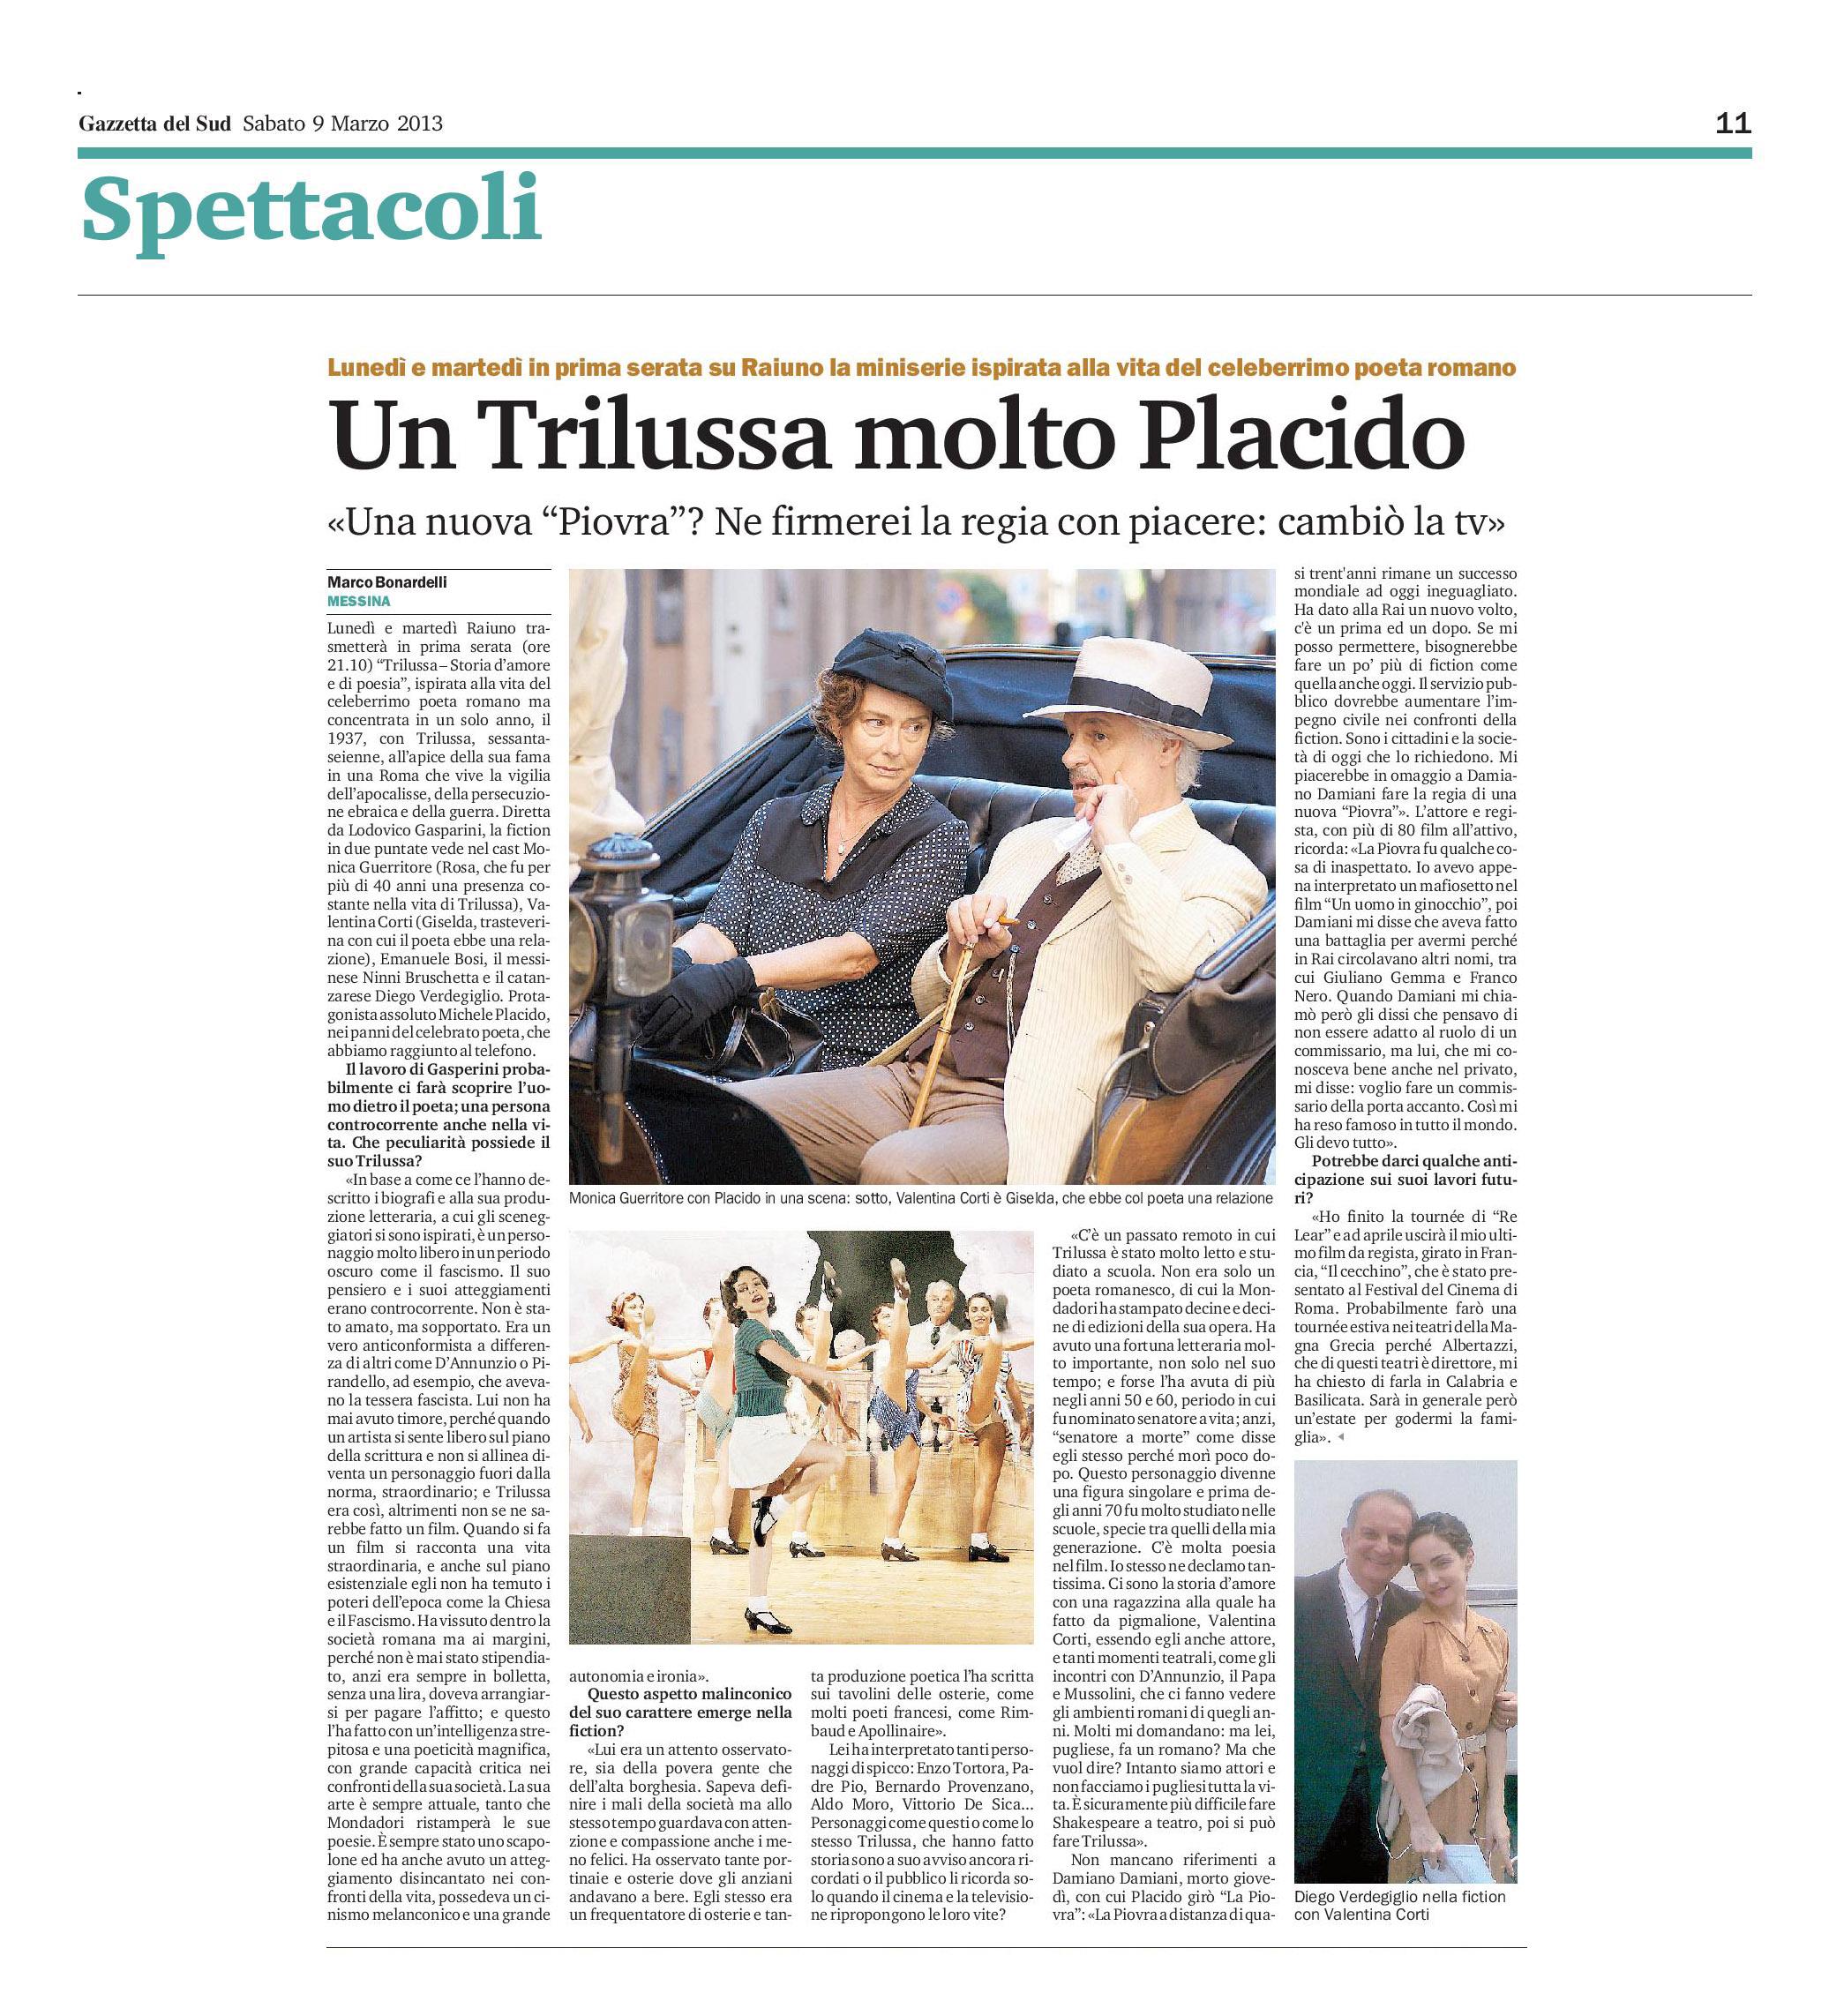 17 - Michele Placido - Un Trilussa molto Placido - Gazzetta del Sud - 9 marzo 2013.jpg